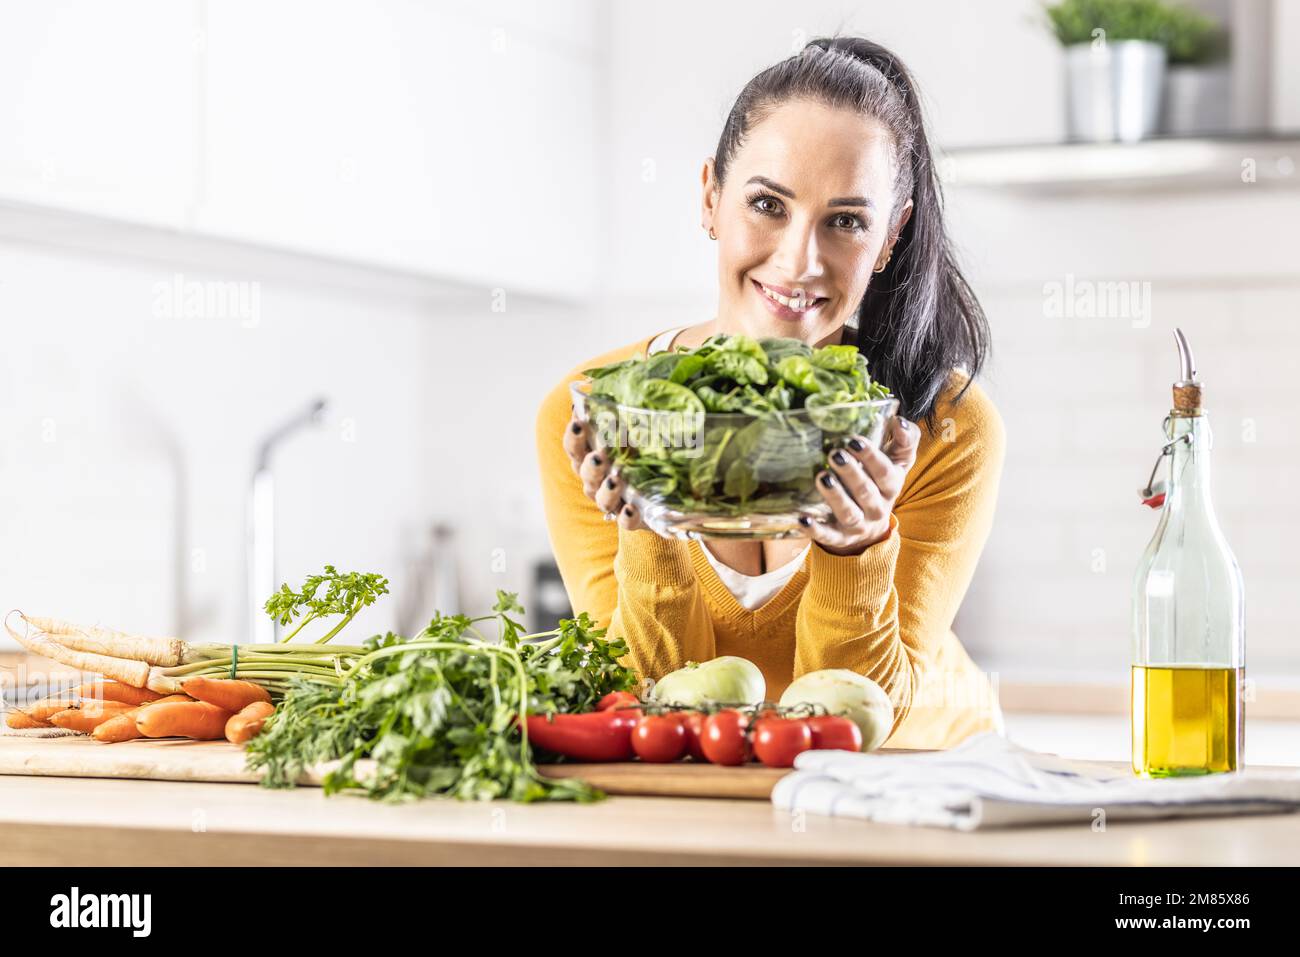 Lächelnde Frau mit einer Schüssel voller Spinatblätter zusammen mit frischem Gemüse und Olivenöl in ihrer Küche. Stockfoto